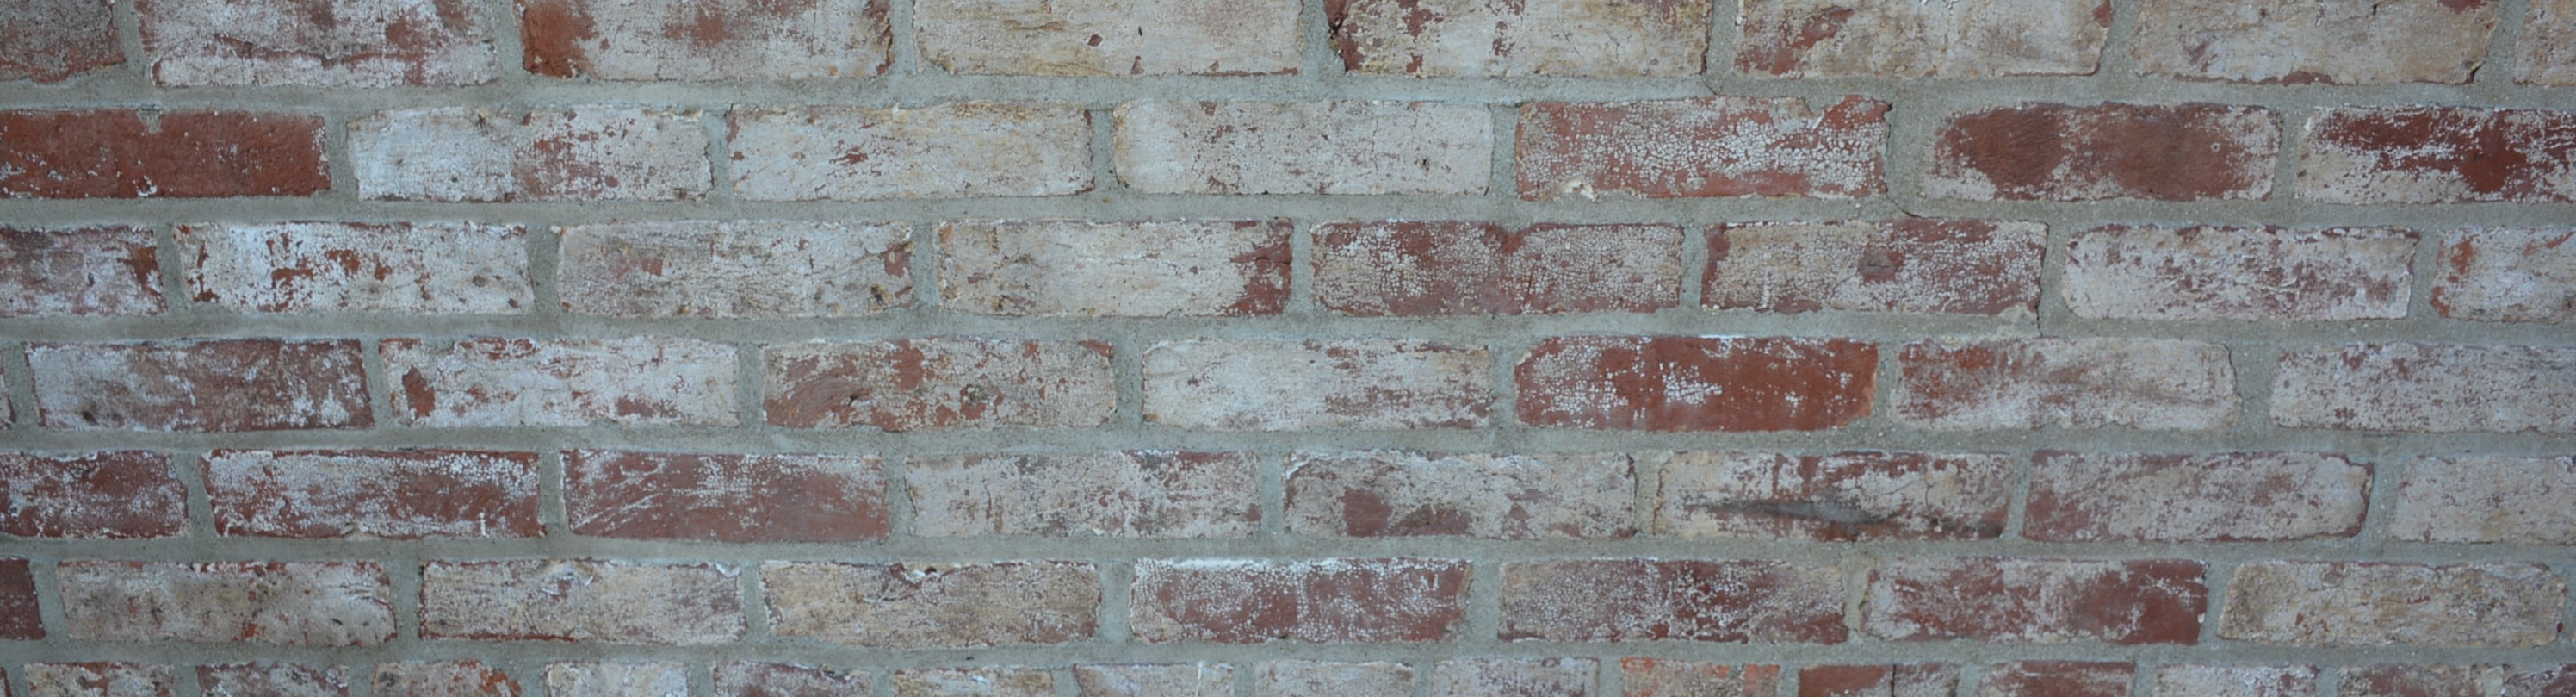 Painted Brick Background Image